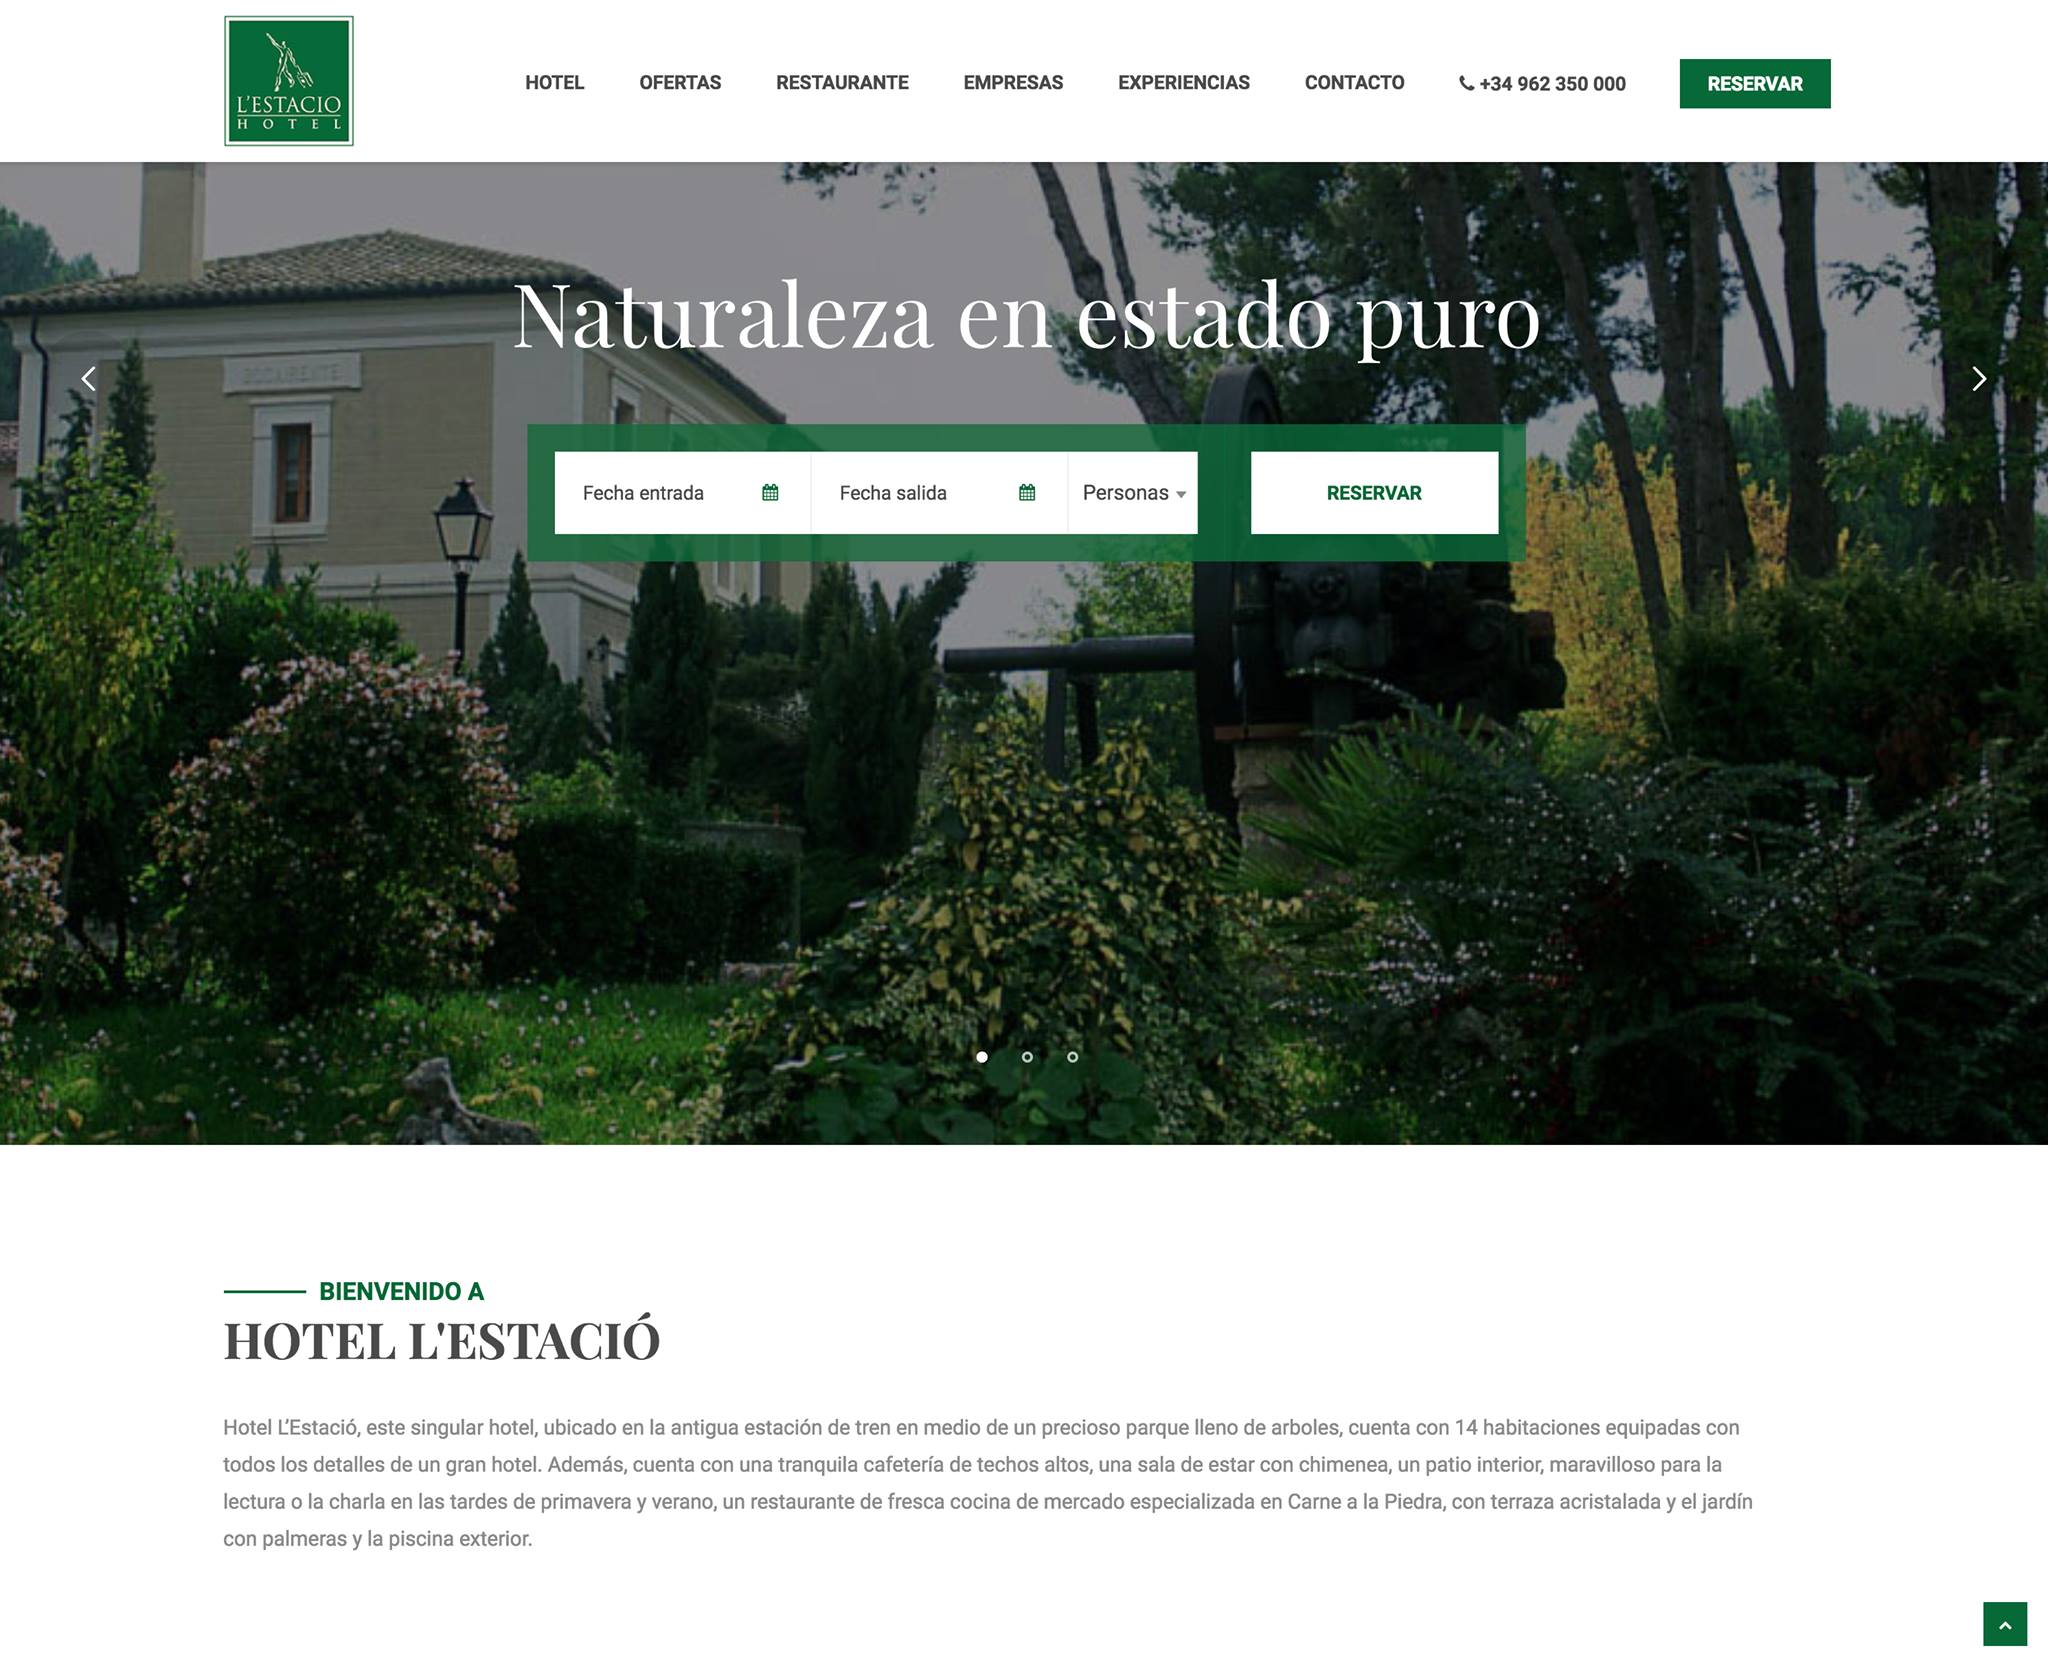 Hotel L’Estació Bocairent launches new website